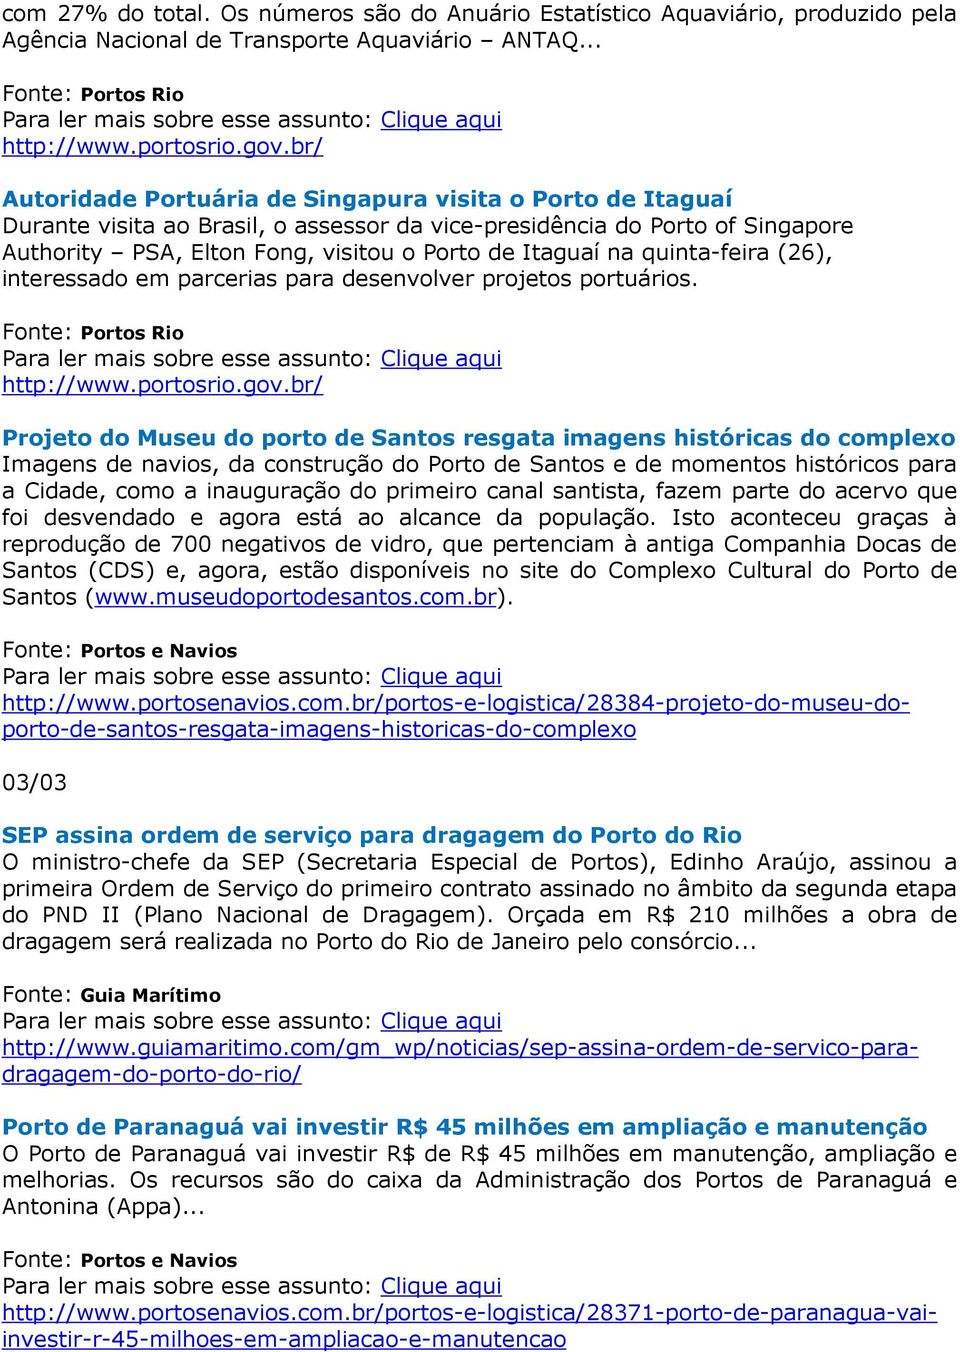 quinta-feira (26), interessado em parcerias para desenvolver projetos portuários. Fonte: Portos Rio http://www.portosrio.gov.